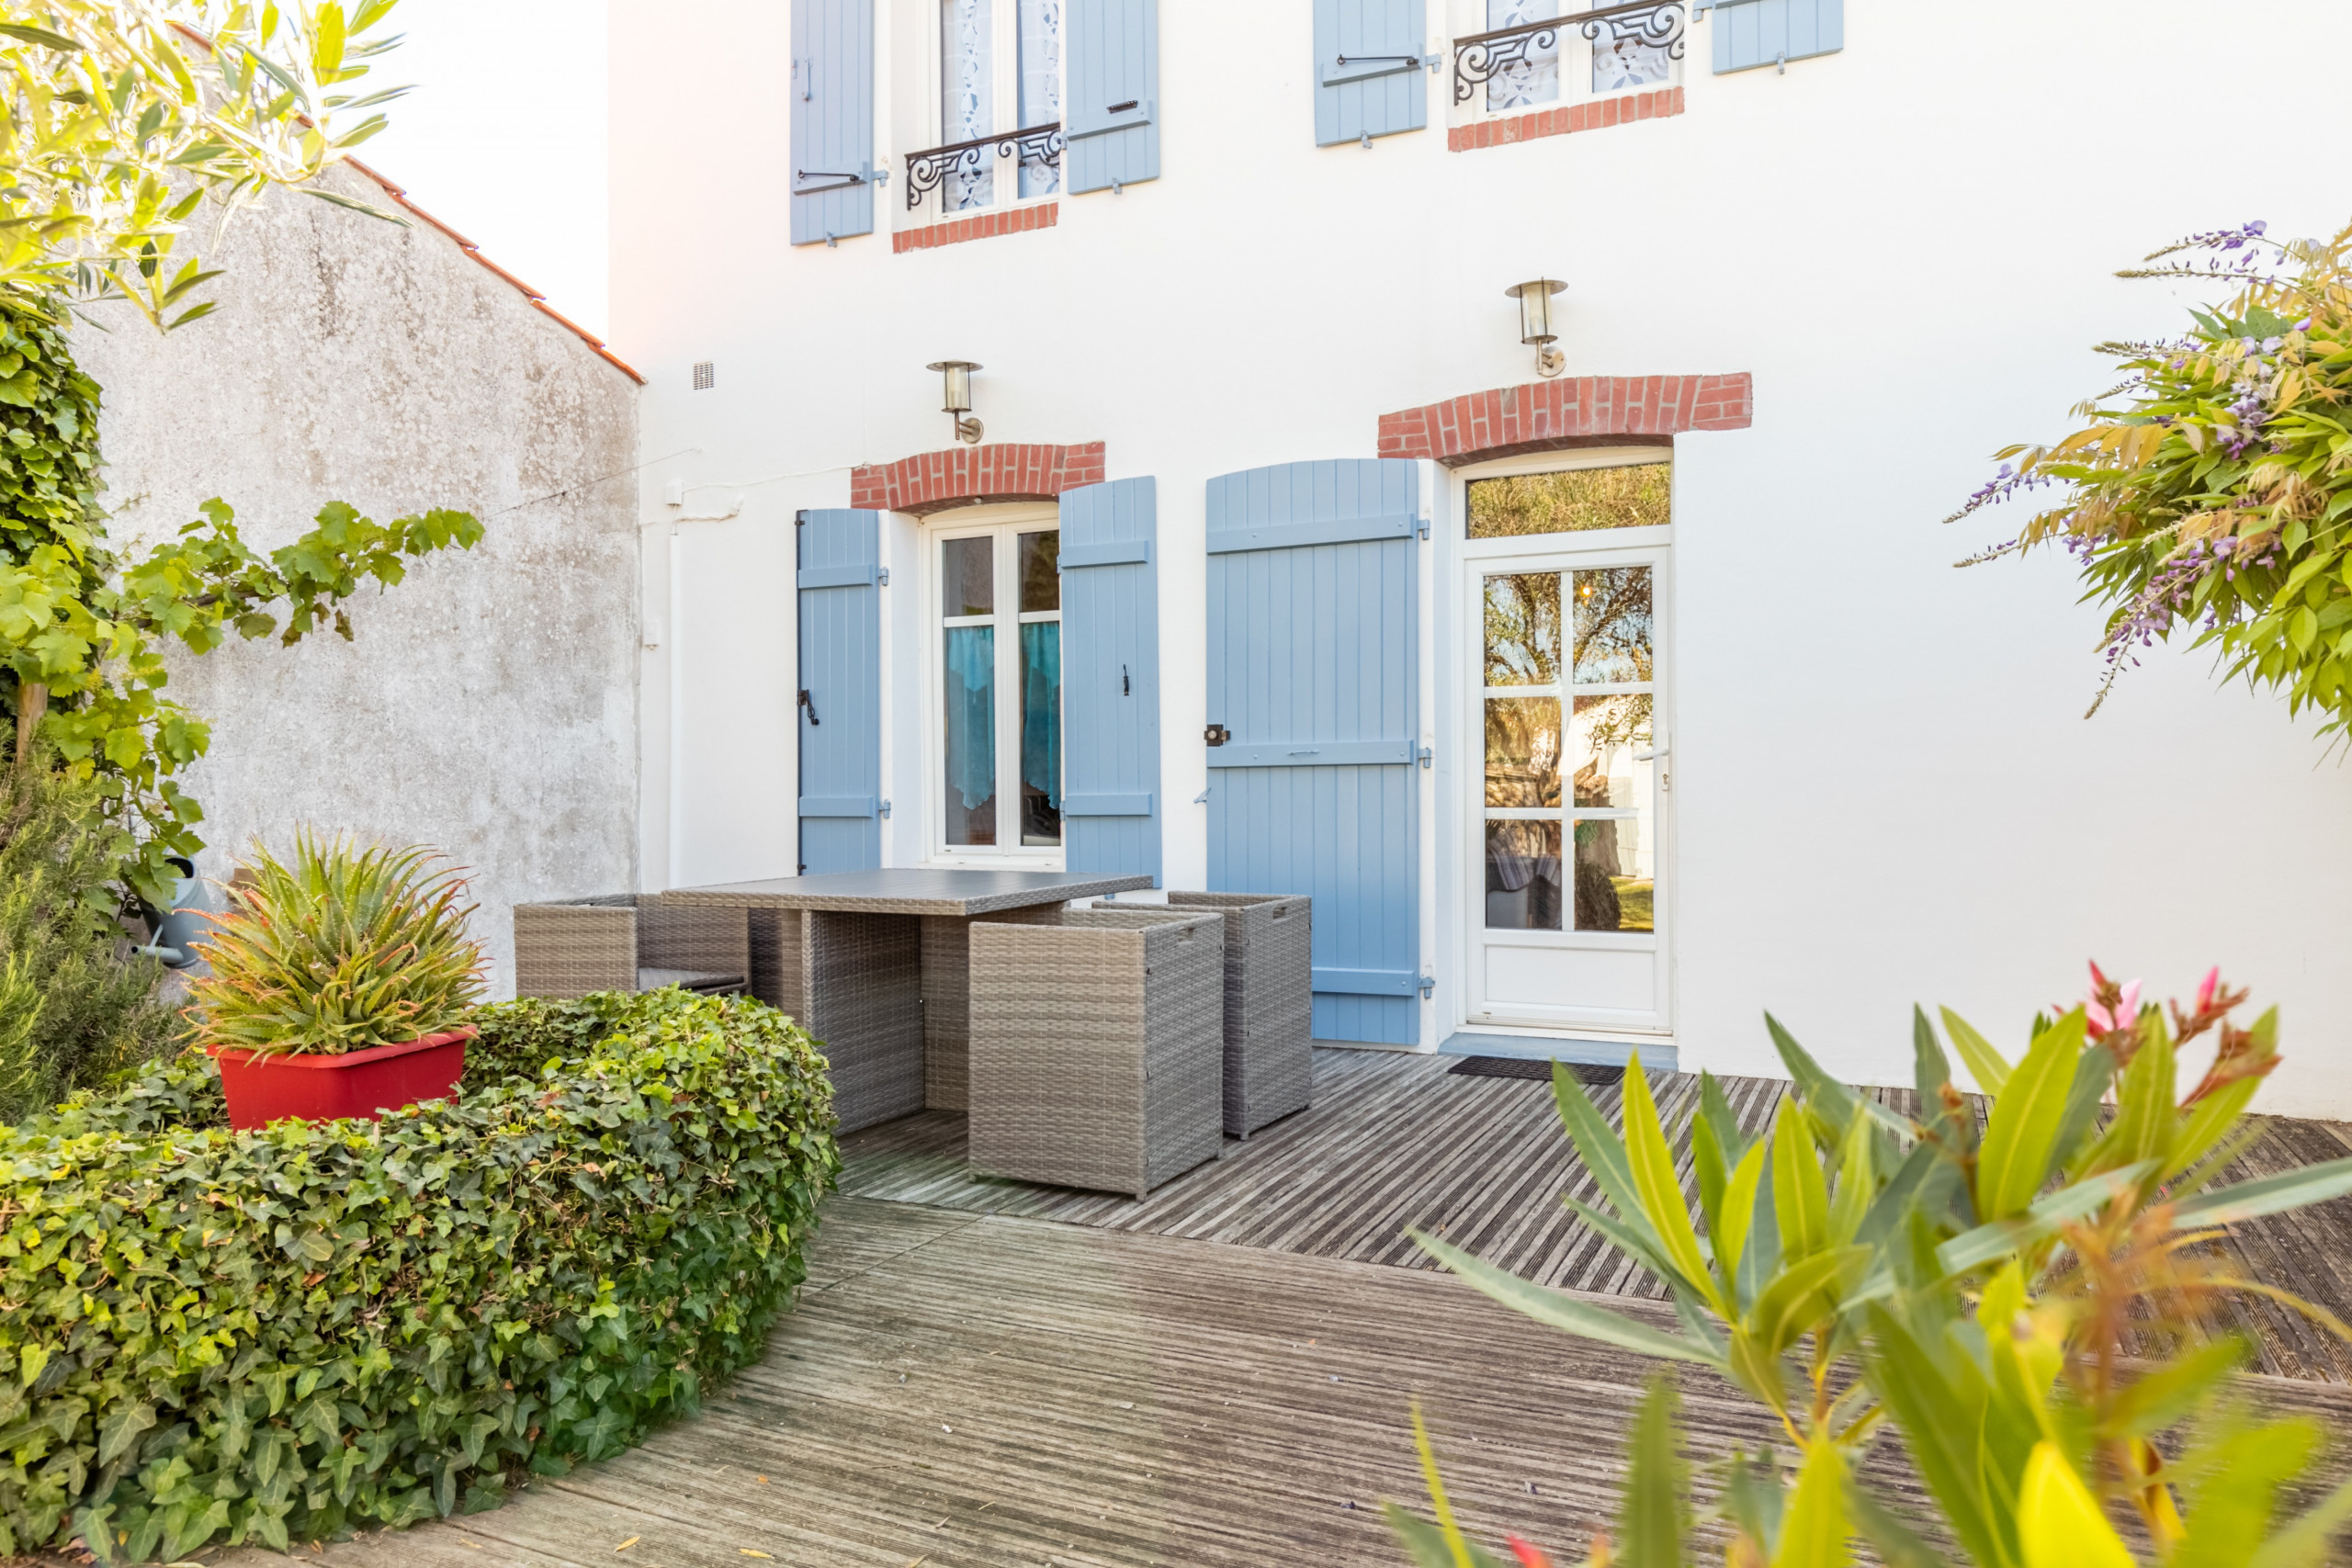  à L'Epine - Une maison de charme avec jardin sur l’île de Noirmoutier